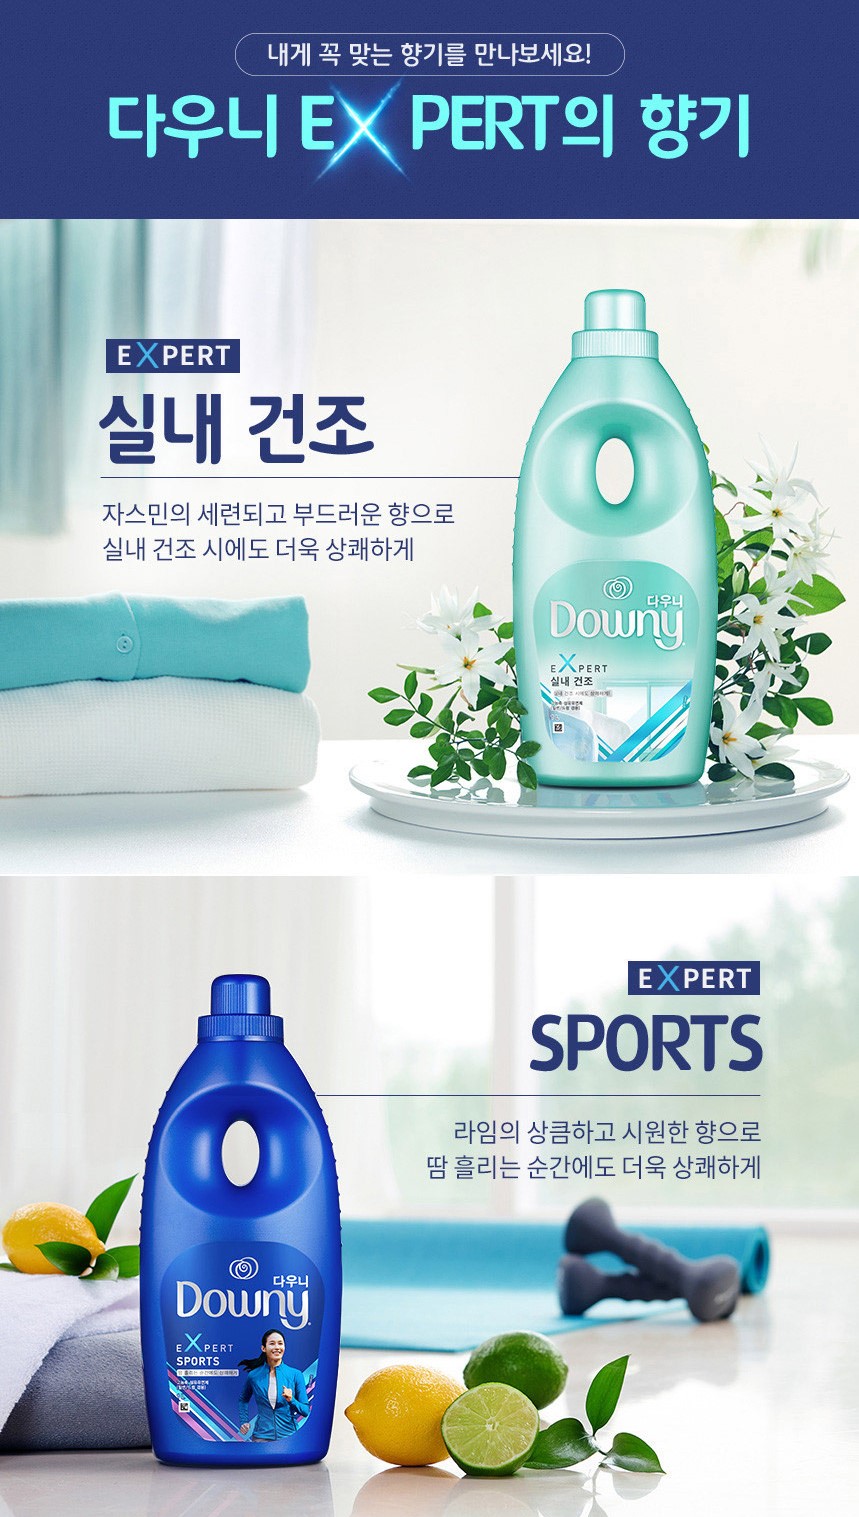 韓國食品-[Downy] Expert Fabric Softener [Indoor Drying - Jasmine Flavour) 1L